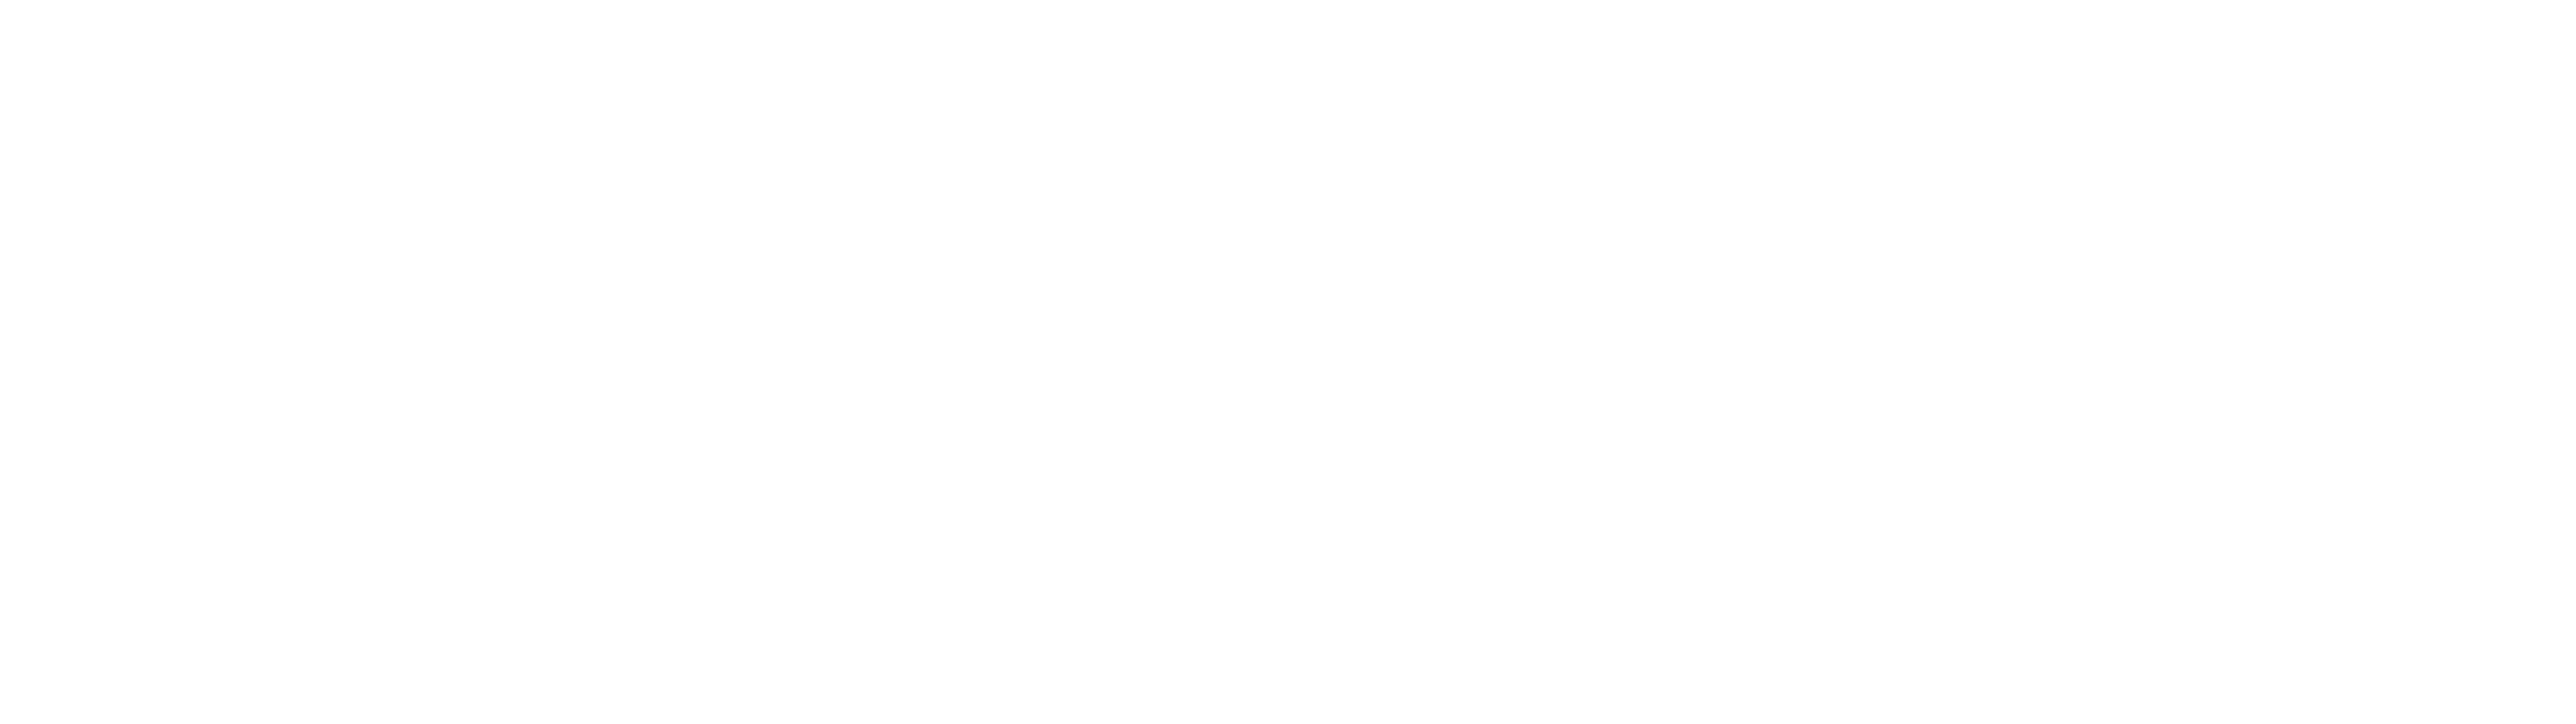 logo level up